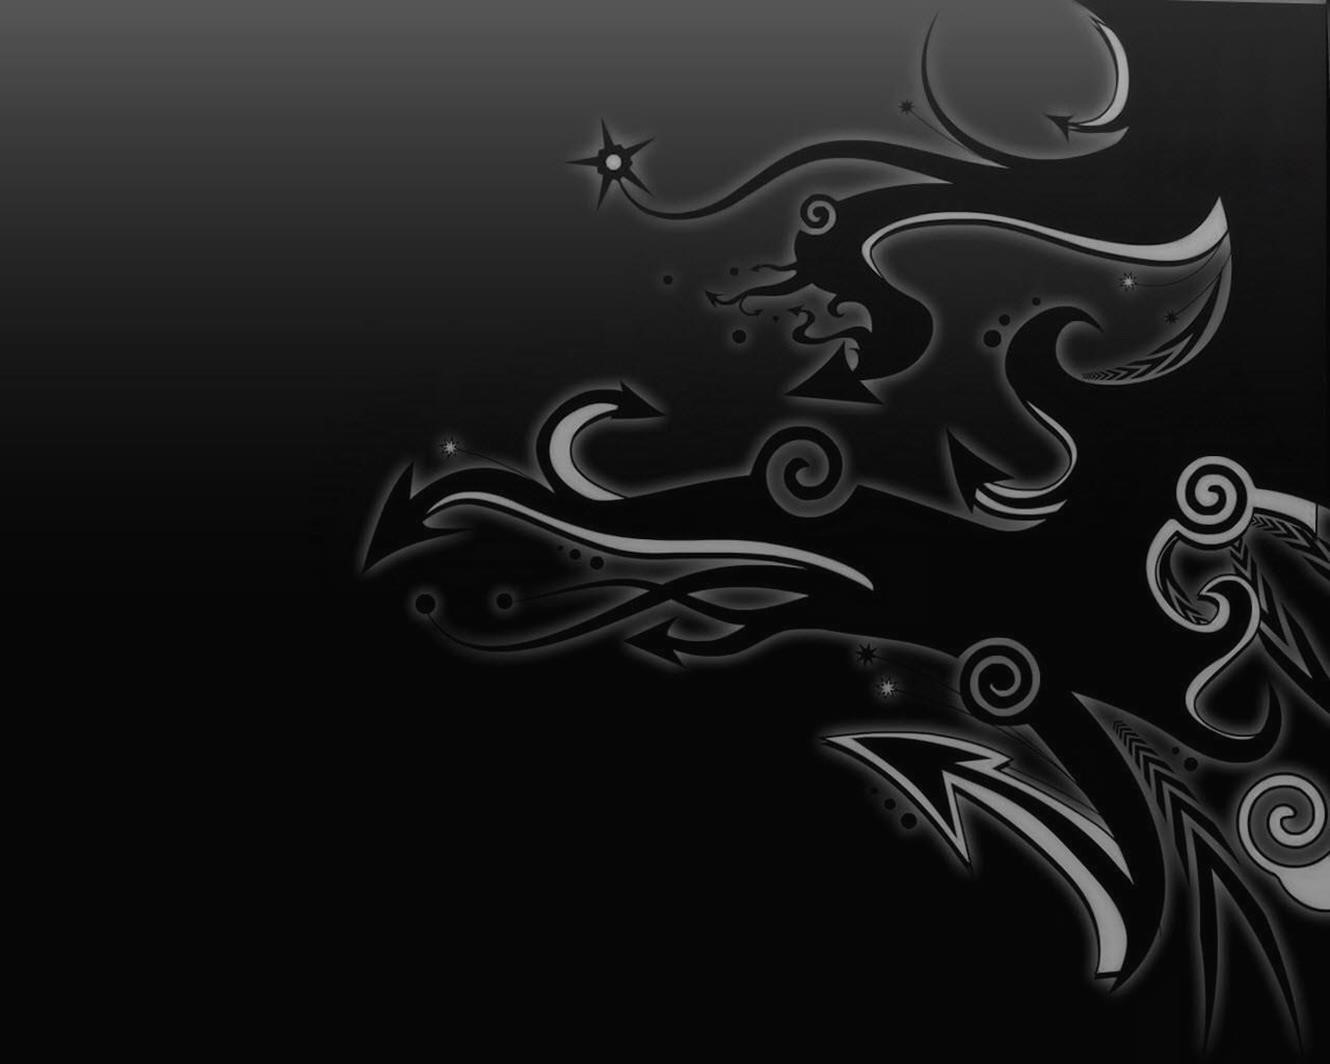 sfondo astratto hd,nero,bianco e nero,acqua,monocromatico,fotografia in bianco e nero